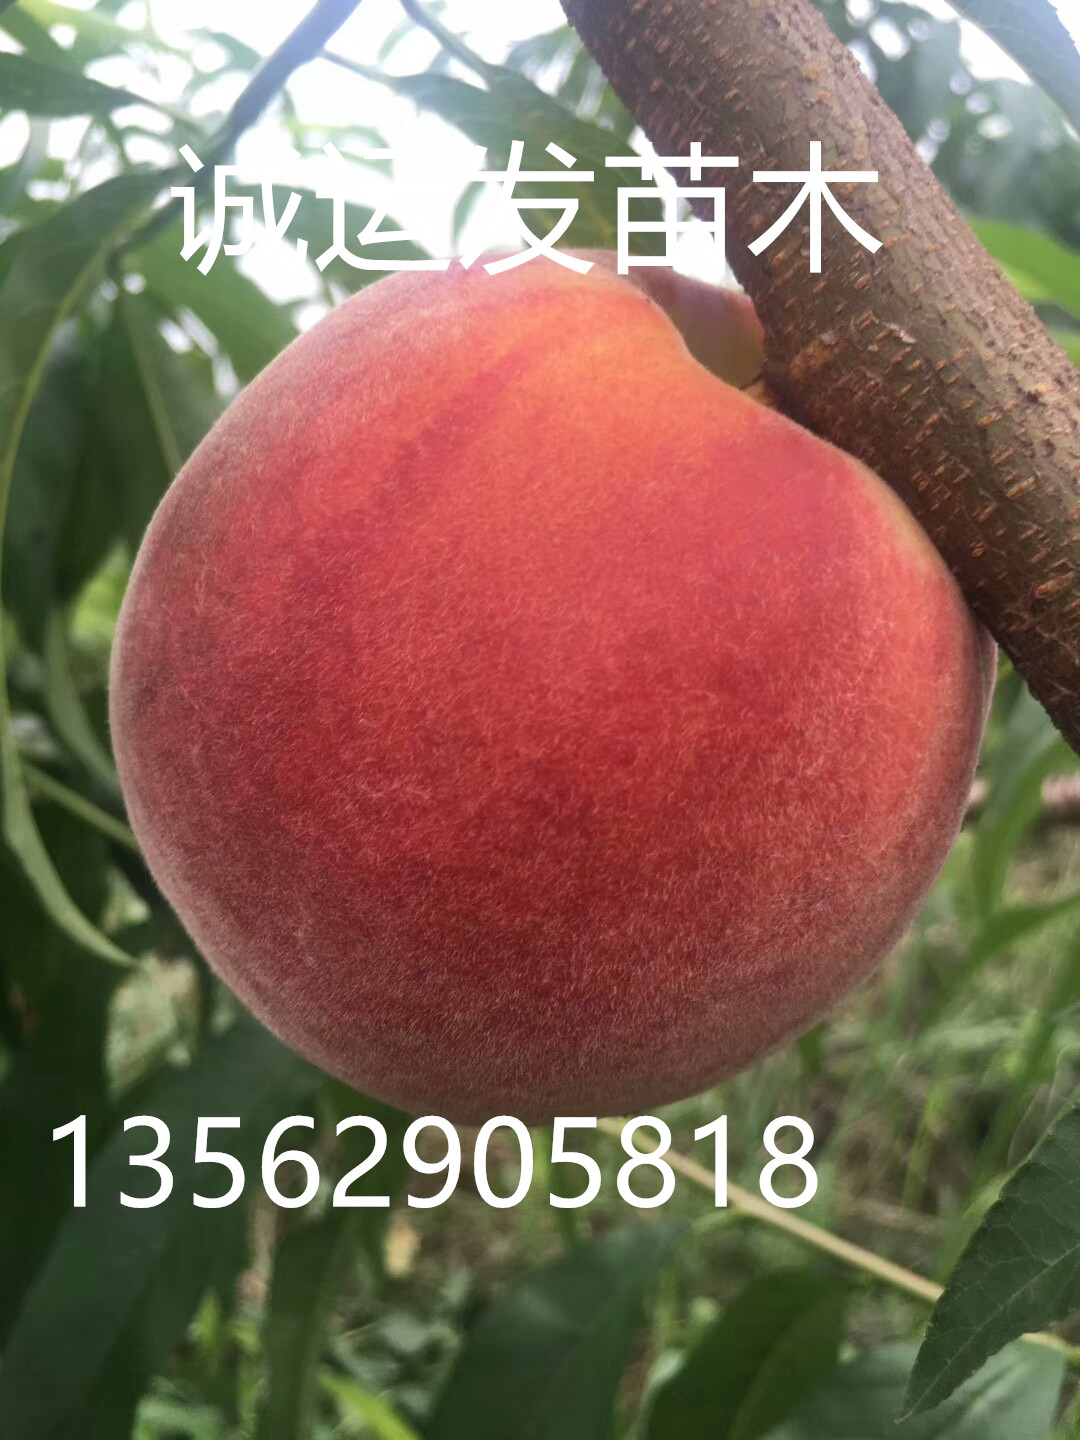 脆桃五月初早熟桃品种